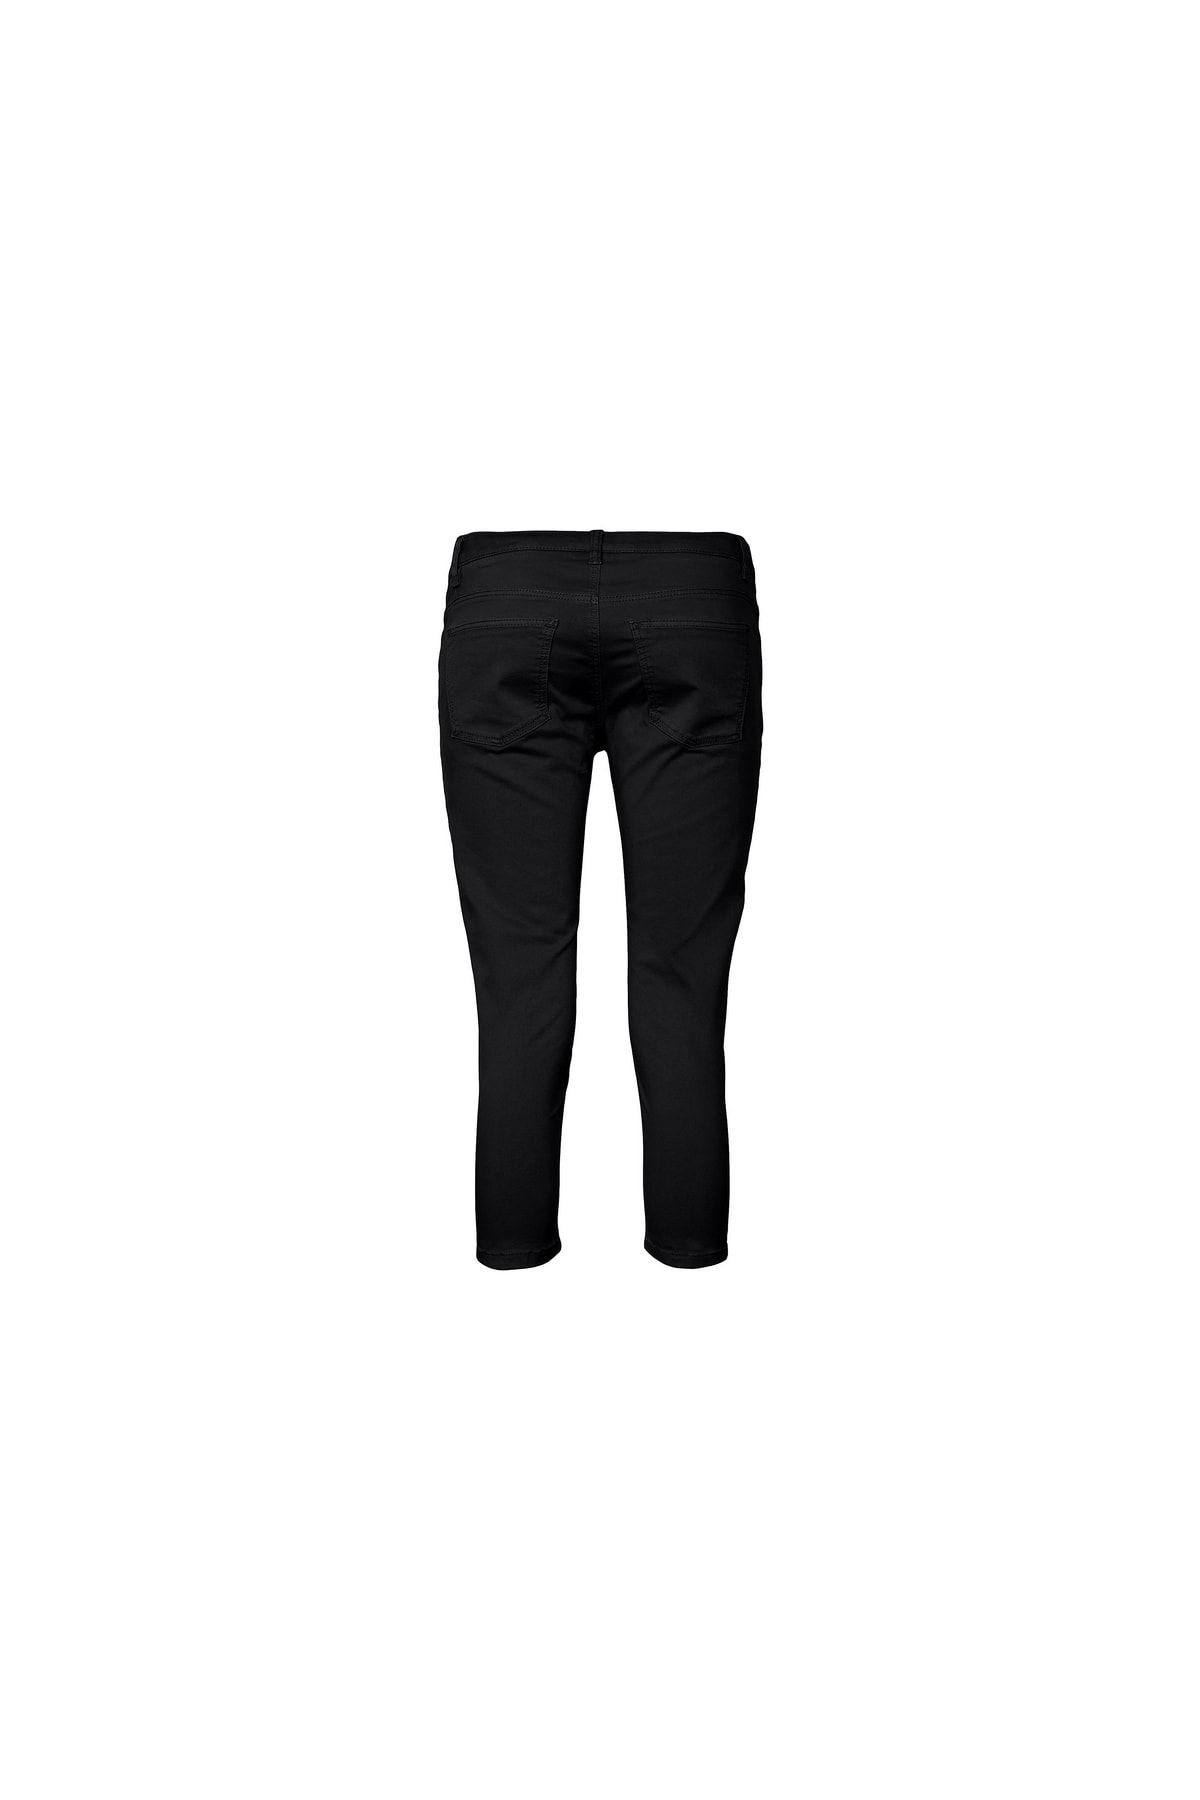 ESPRIT - Slim fit trousers, organic cotton at our online shop